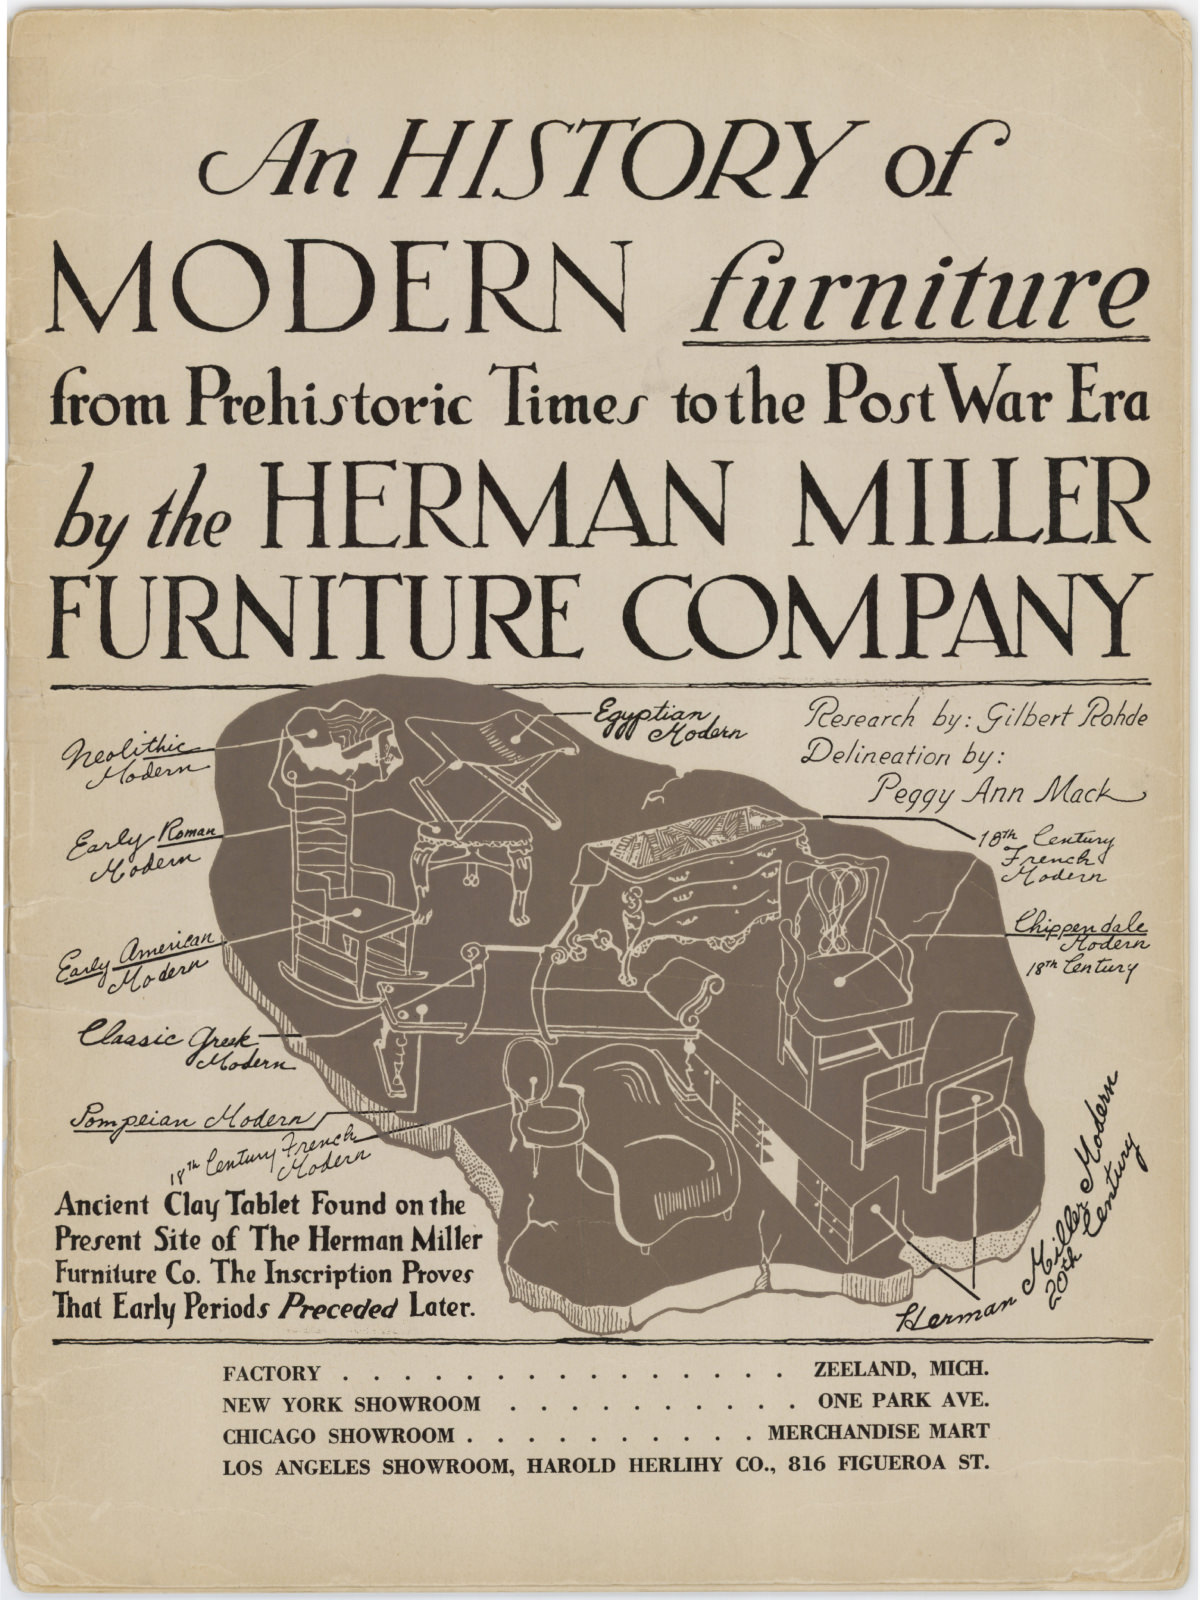 Folleto promocional de Herman Miller con ilustraciones en negro y blanco de reproducciones de mobiliario antiguo junto a mobiliario moderno. El texto promueve el diseño moderno.